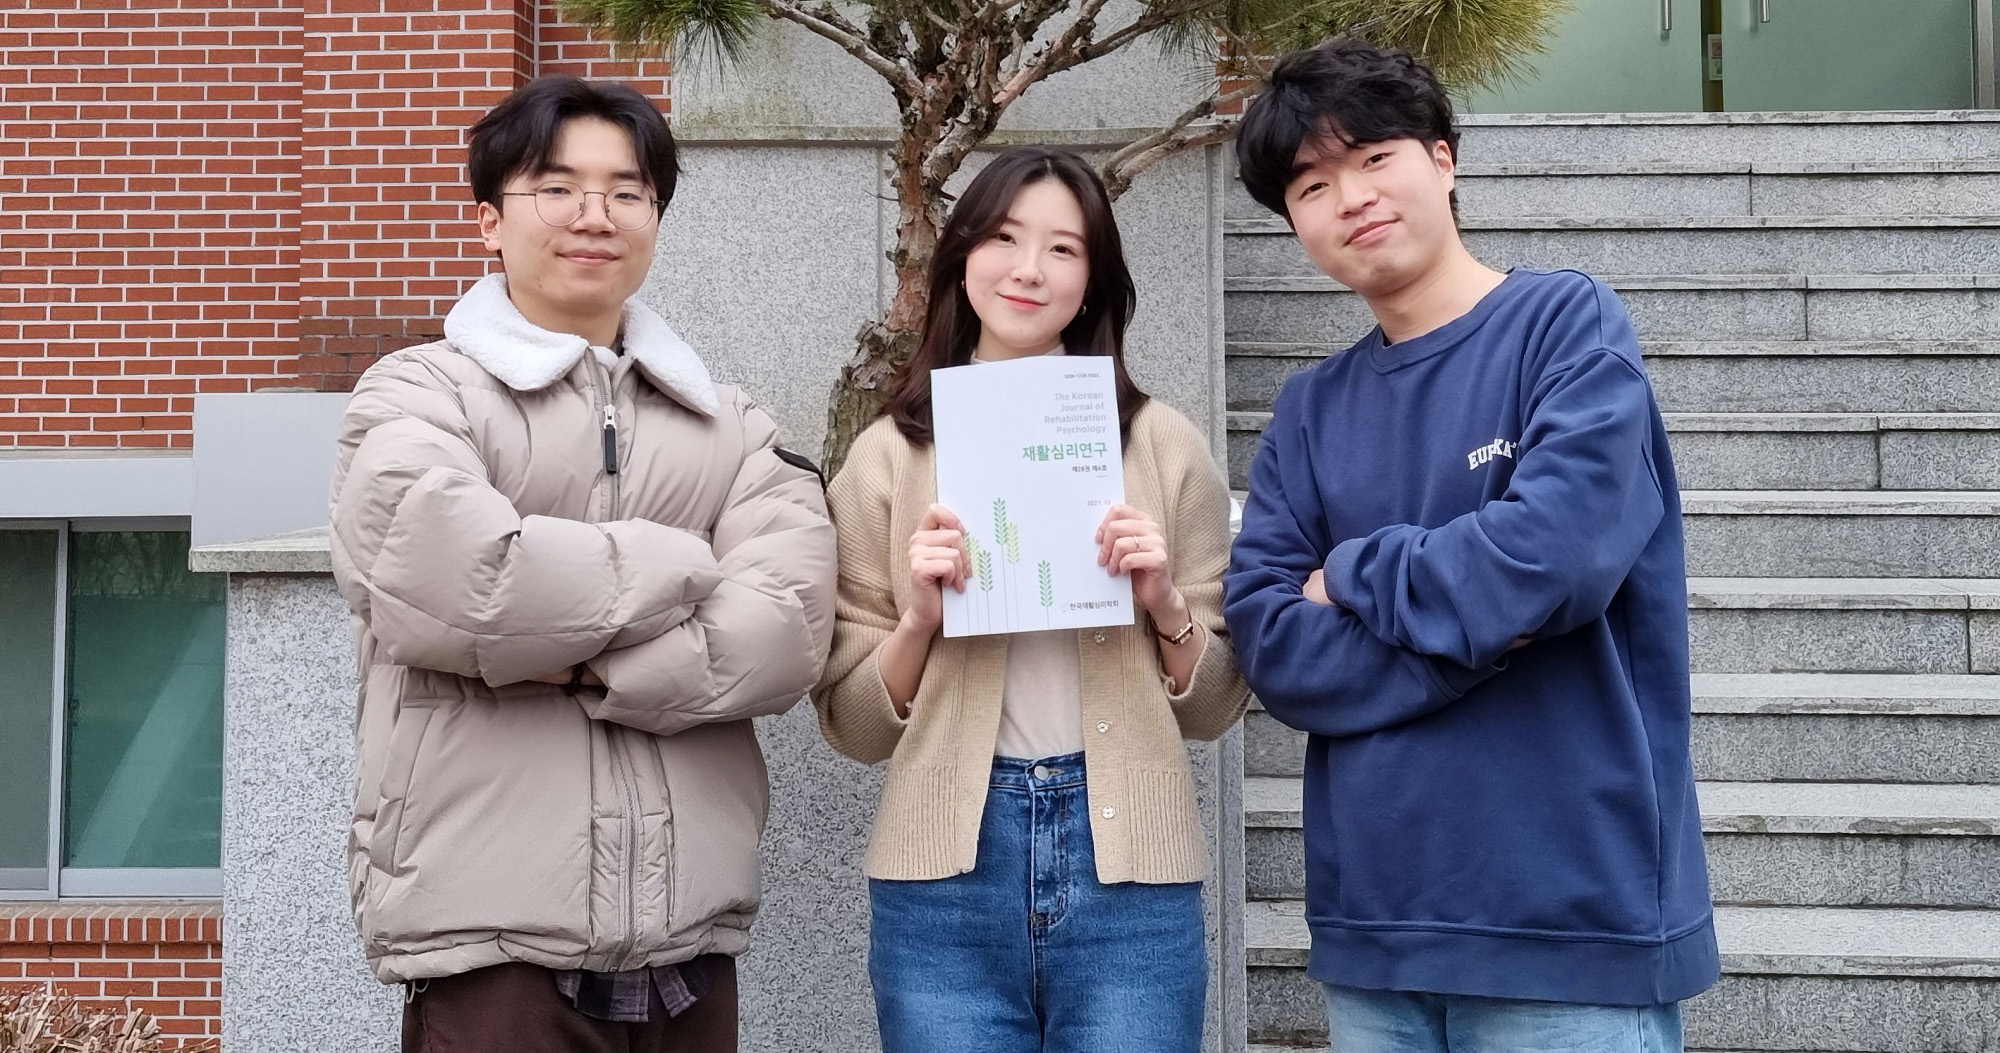 왼쪽부터 순서대로 김현준, 박지연 학생과 석사과정 이선국 씨